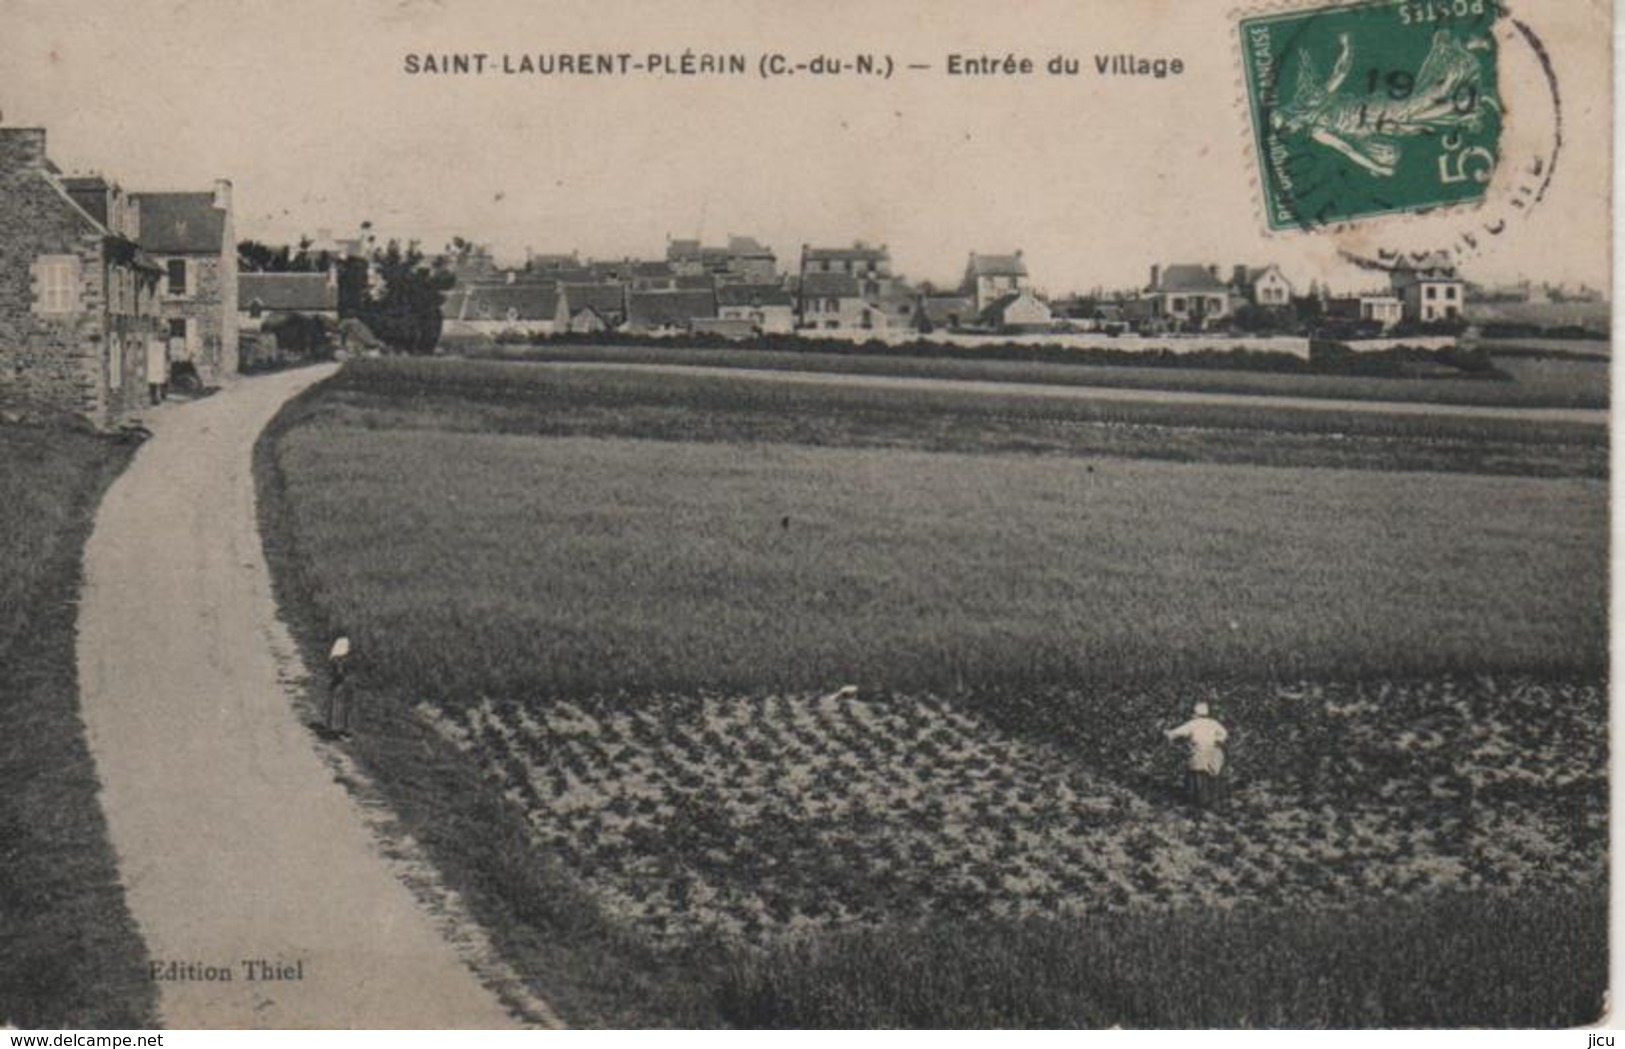 SAINT-LAURENT-PLERIN, Entrée Du Village - édition Thiel - Plérin / Saint-Laurent-de-la-Mer